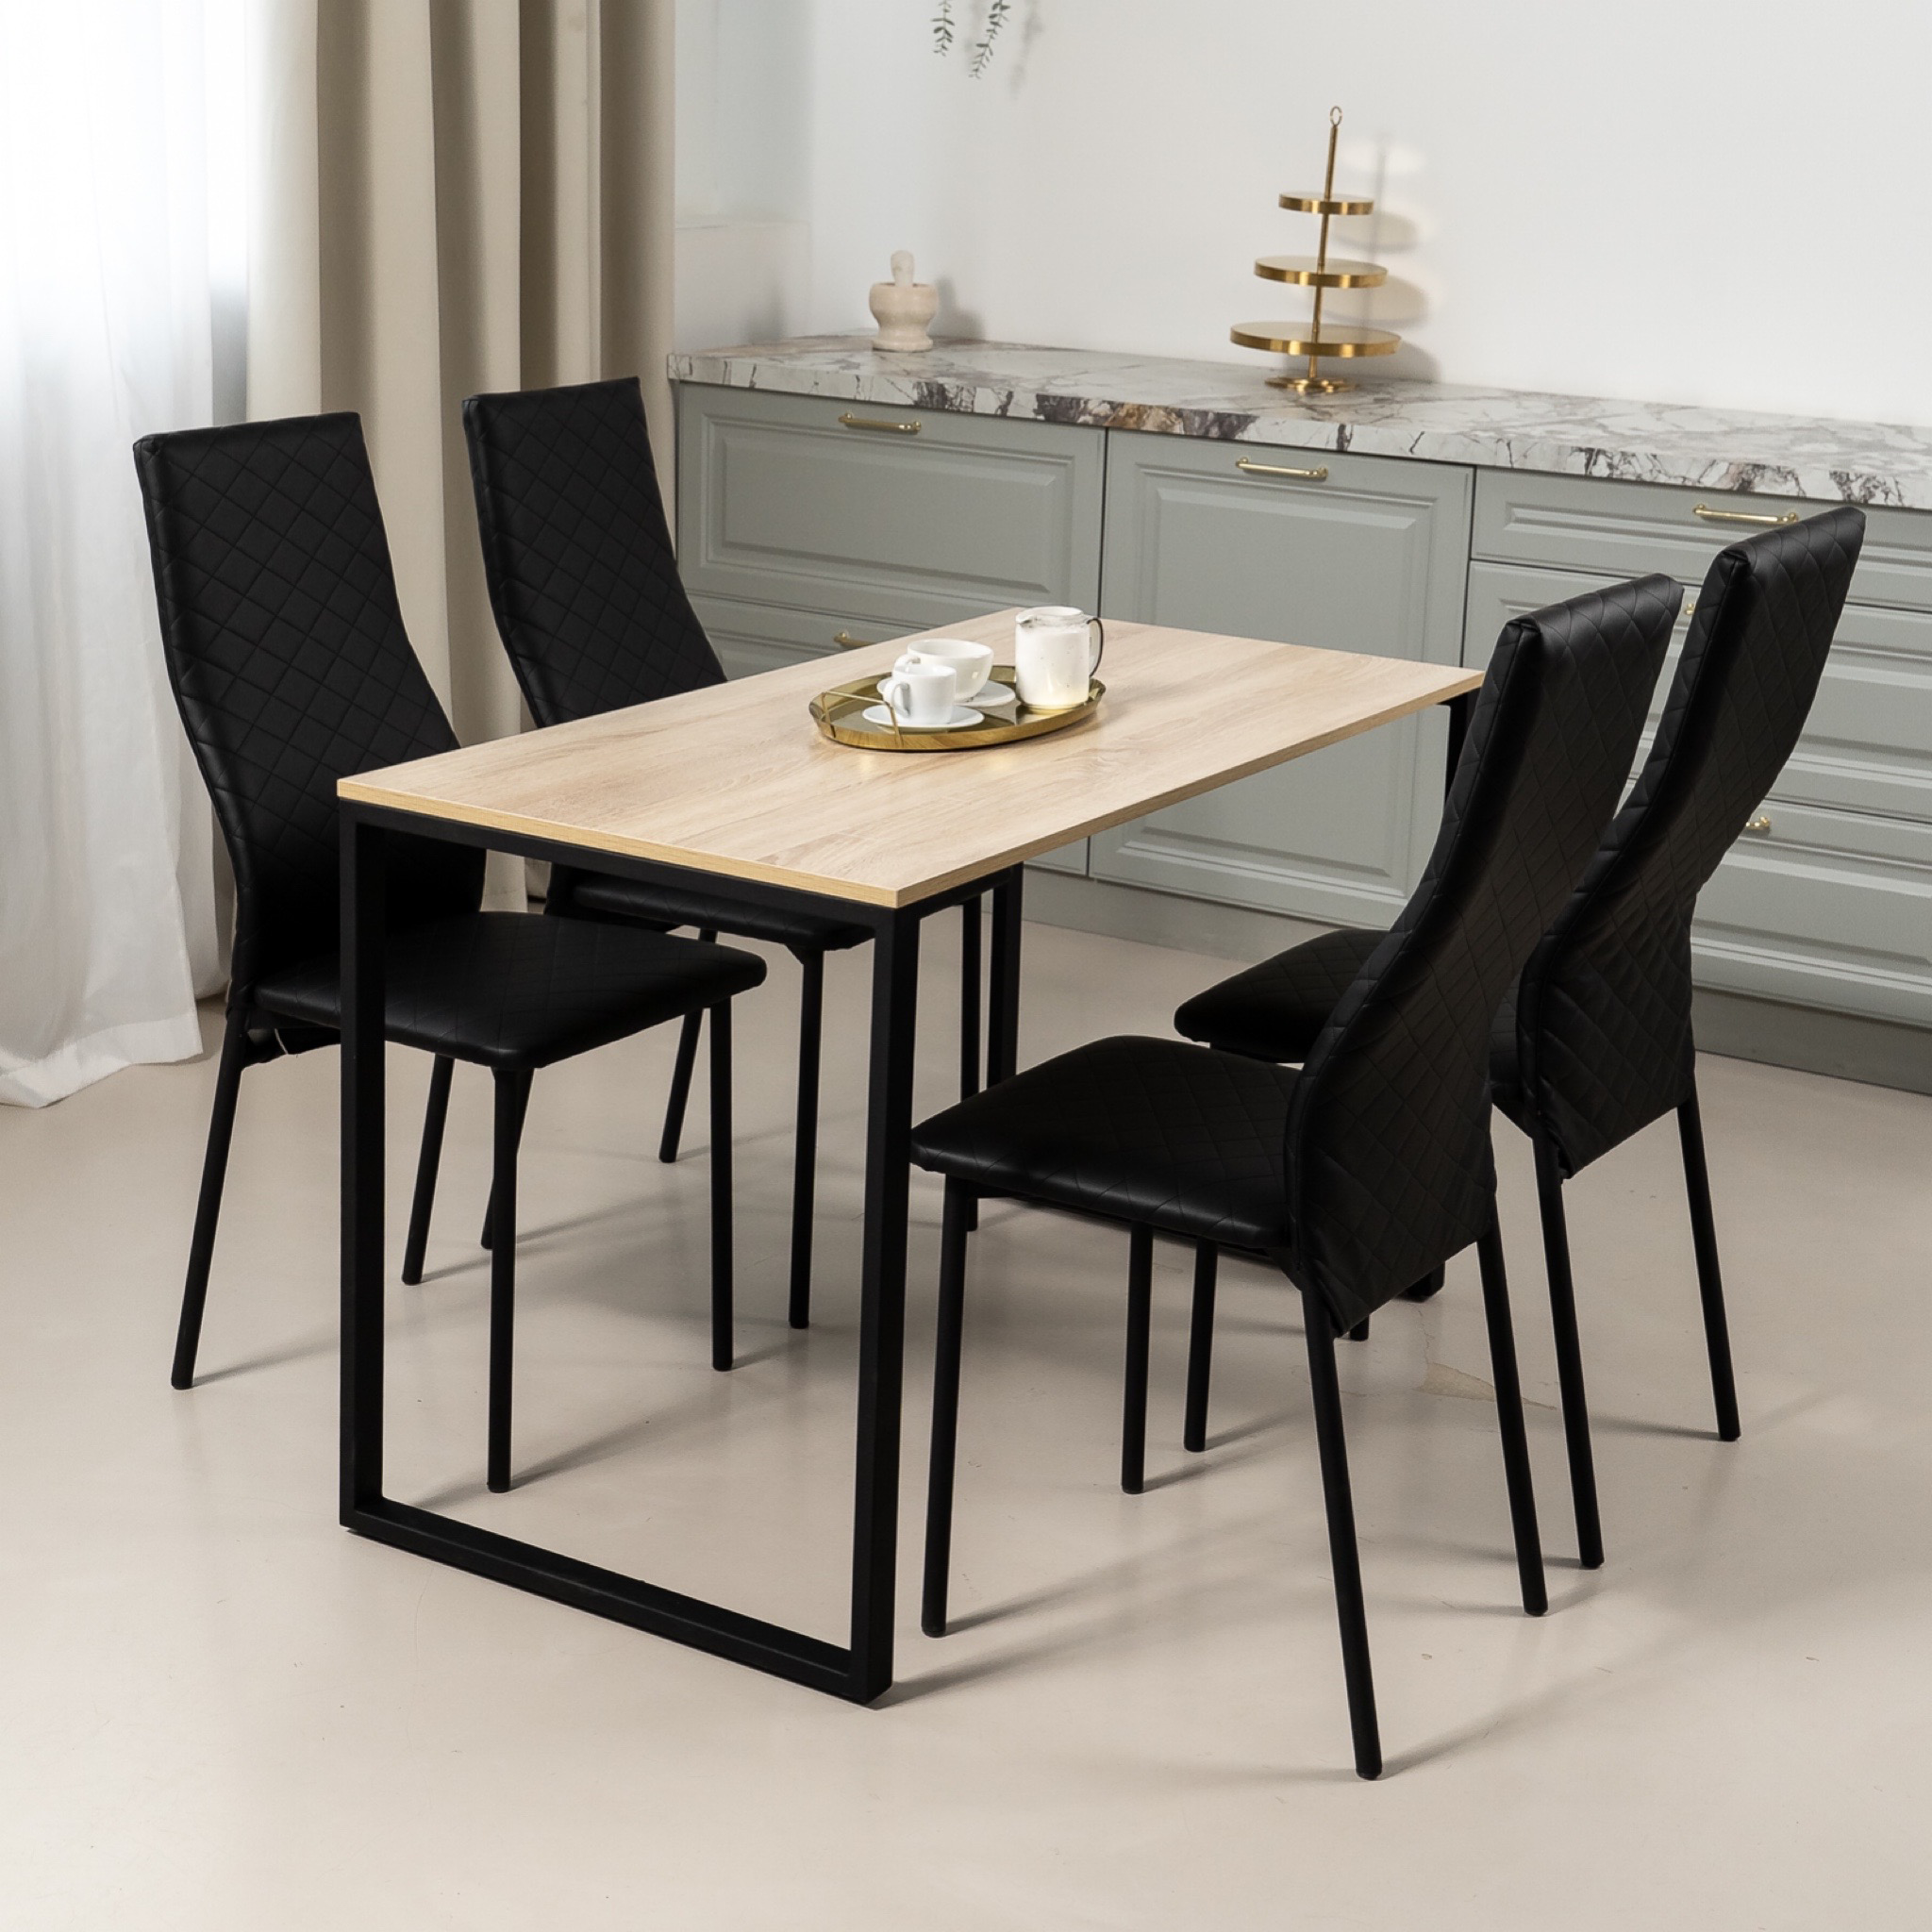 Обеденная группа Стол и 4 стула стол «Дуб Сонома» 120х60х75 стулья Черные искусственная кожа 4 шт.